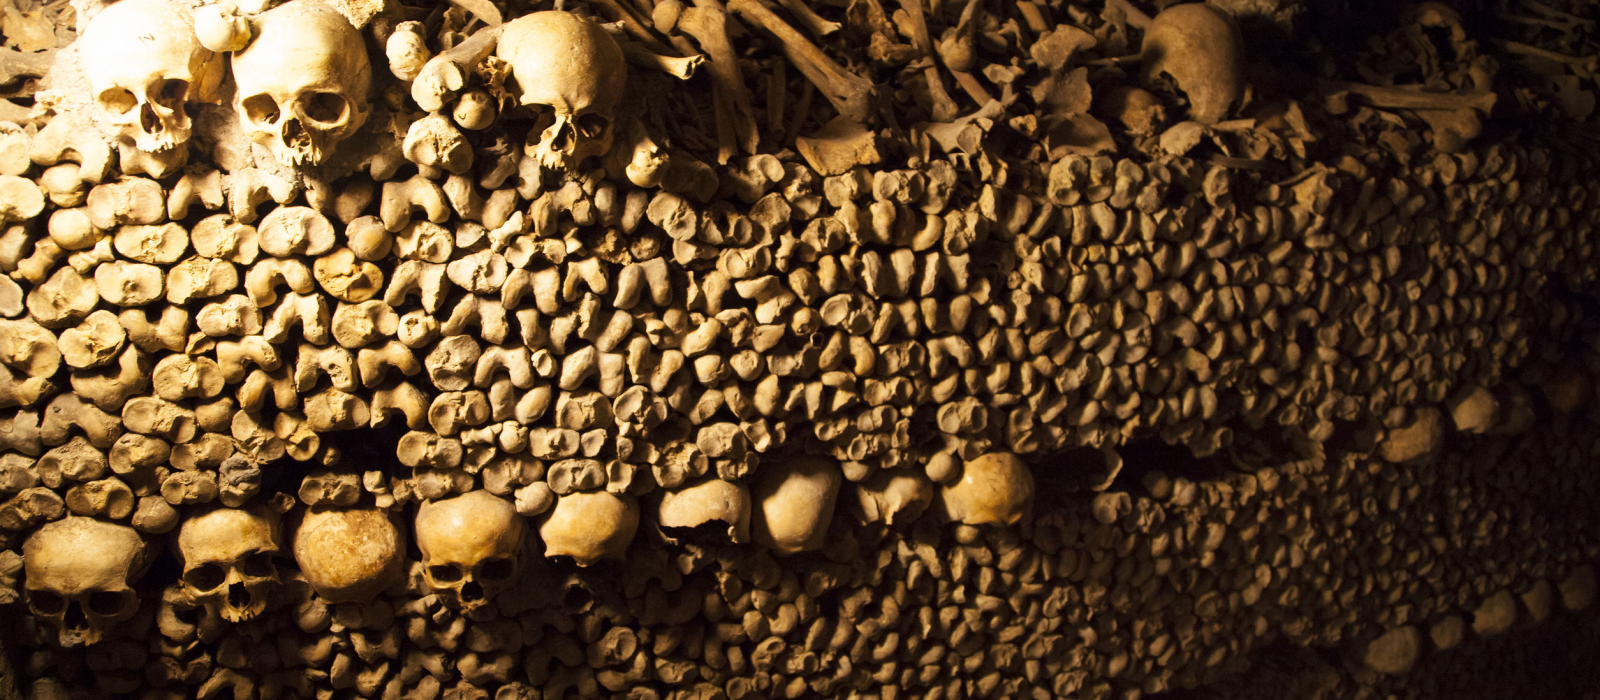 Les catacombes de Paris, un lieu qui intrigue